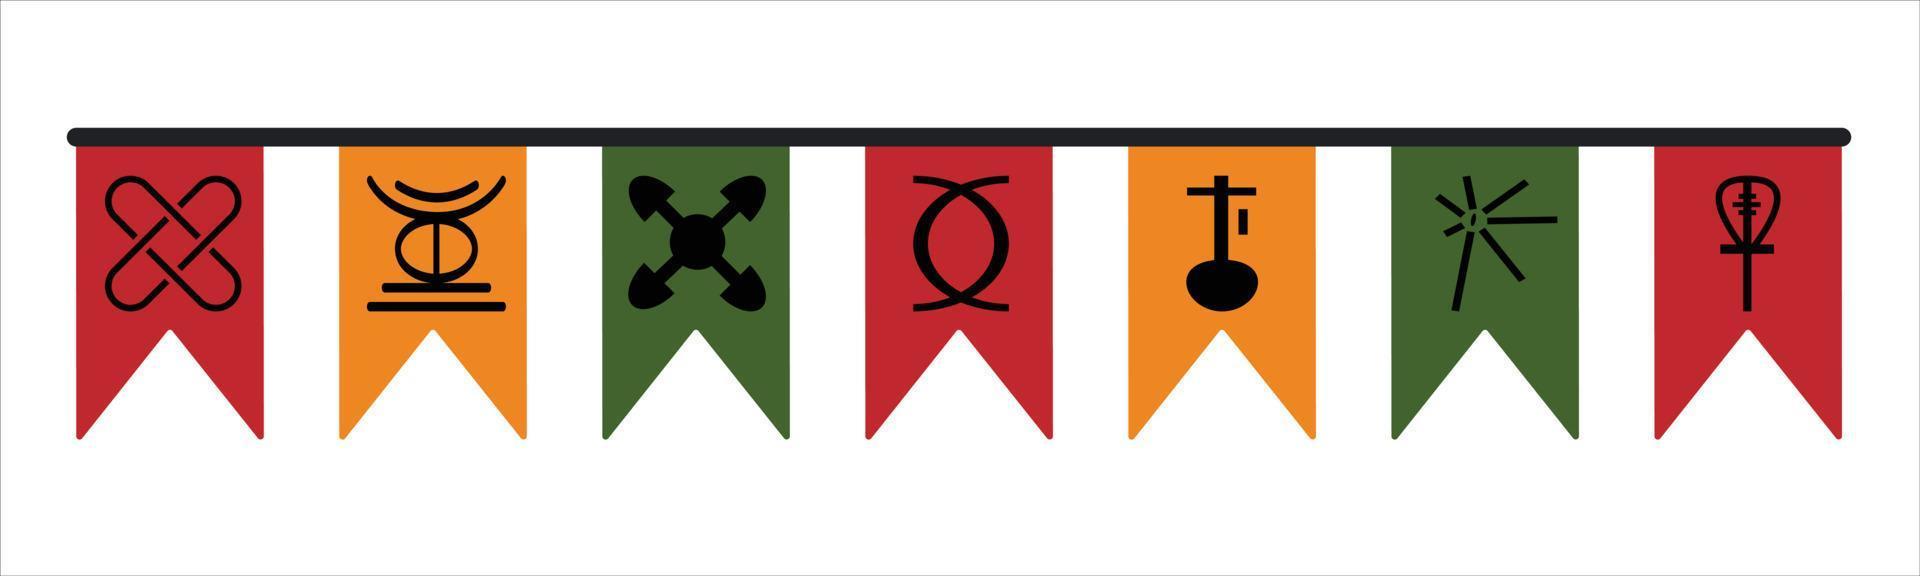 lindo banderín de banderas festivas con siete principios de los iconos de símbolos de kwanzaa para el festival de kwanzaa - fiesta étnica afroamericana tradicional. vector clip art diseño elemento decoración aislado